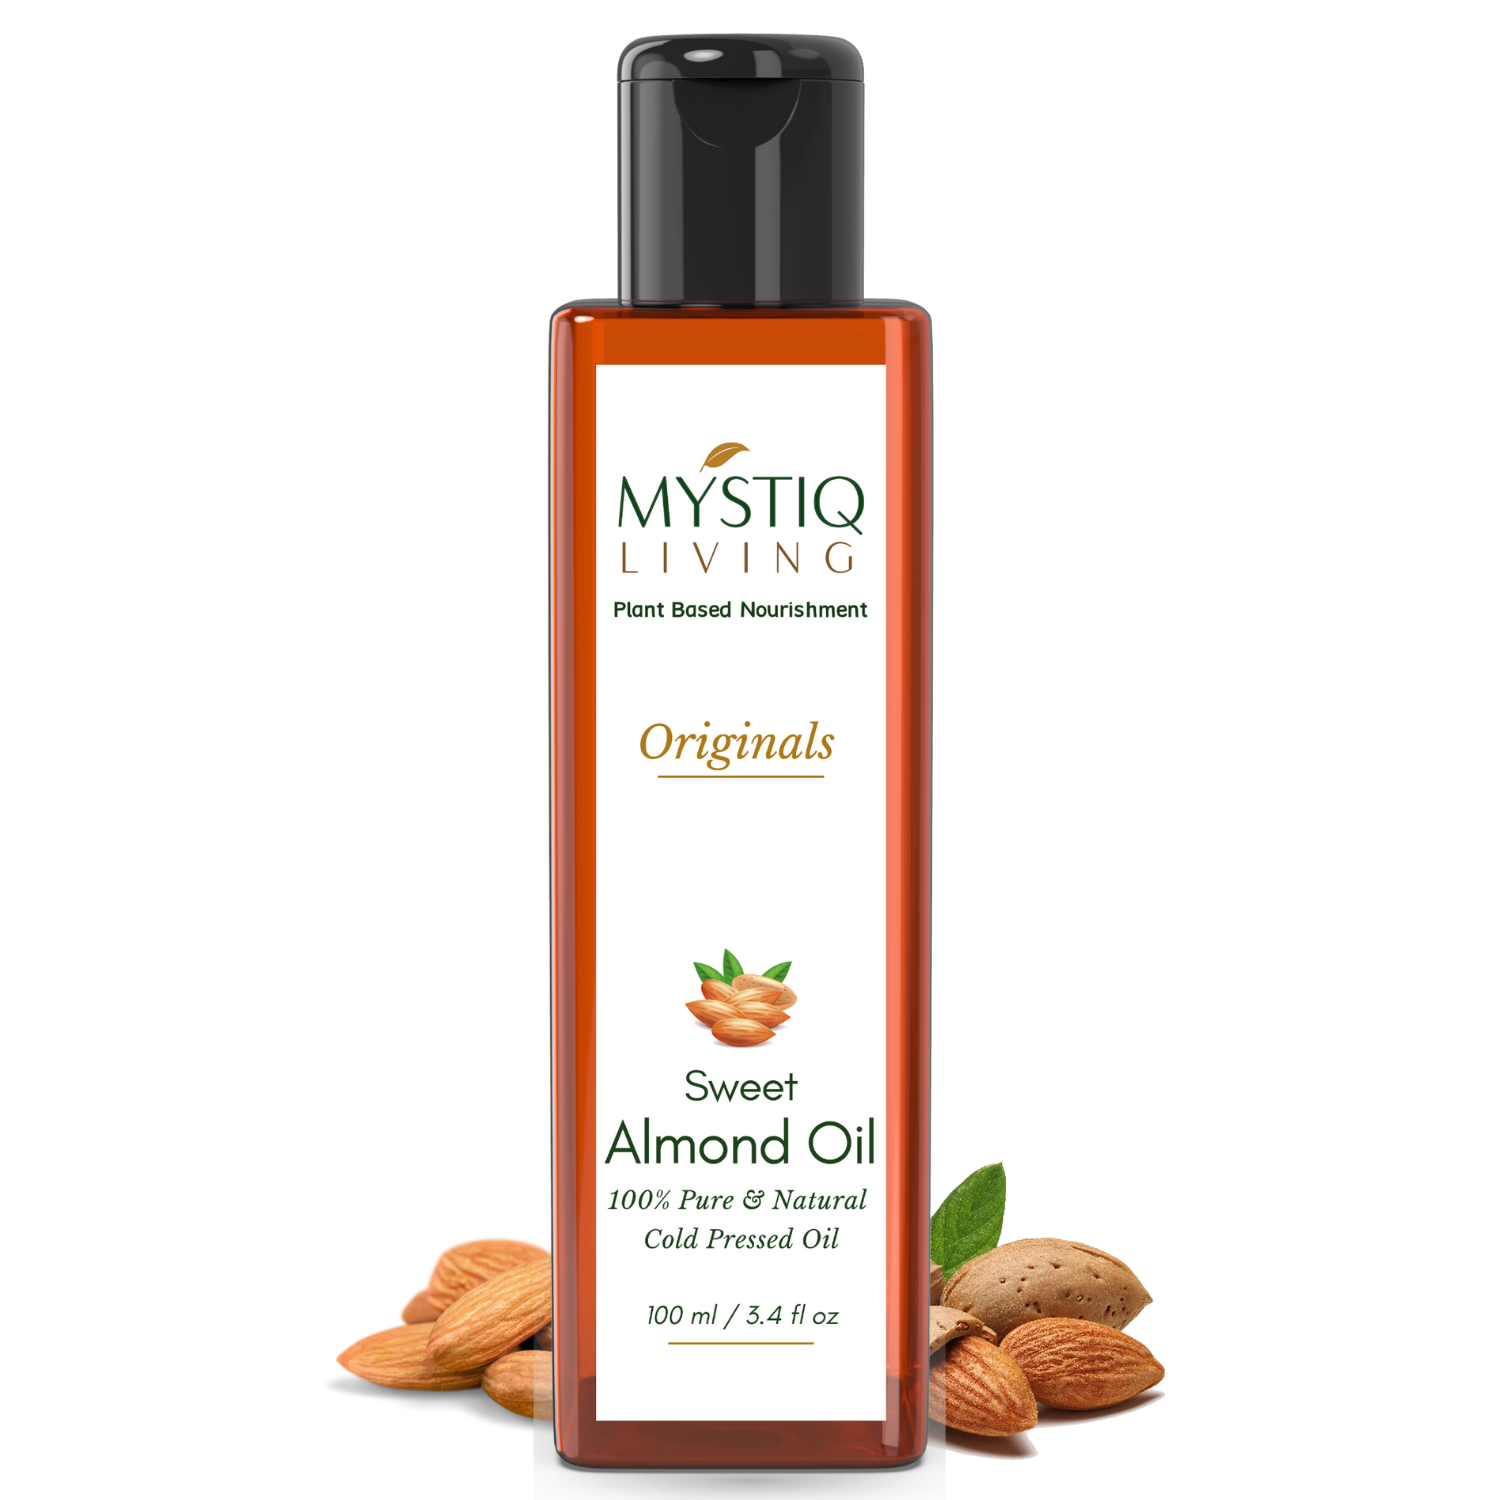 Sweet Almond Oil | Cold Pressed Oil for Under Eye & Hair - Mystiq Living